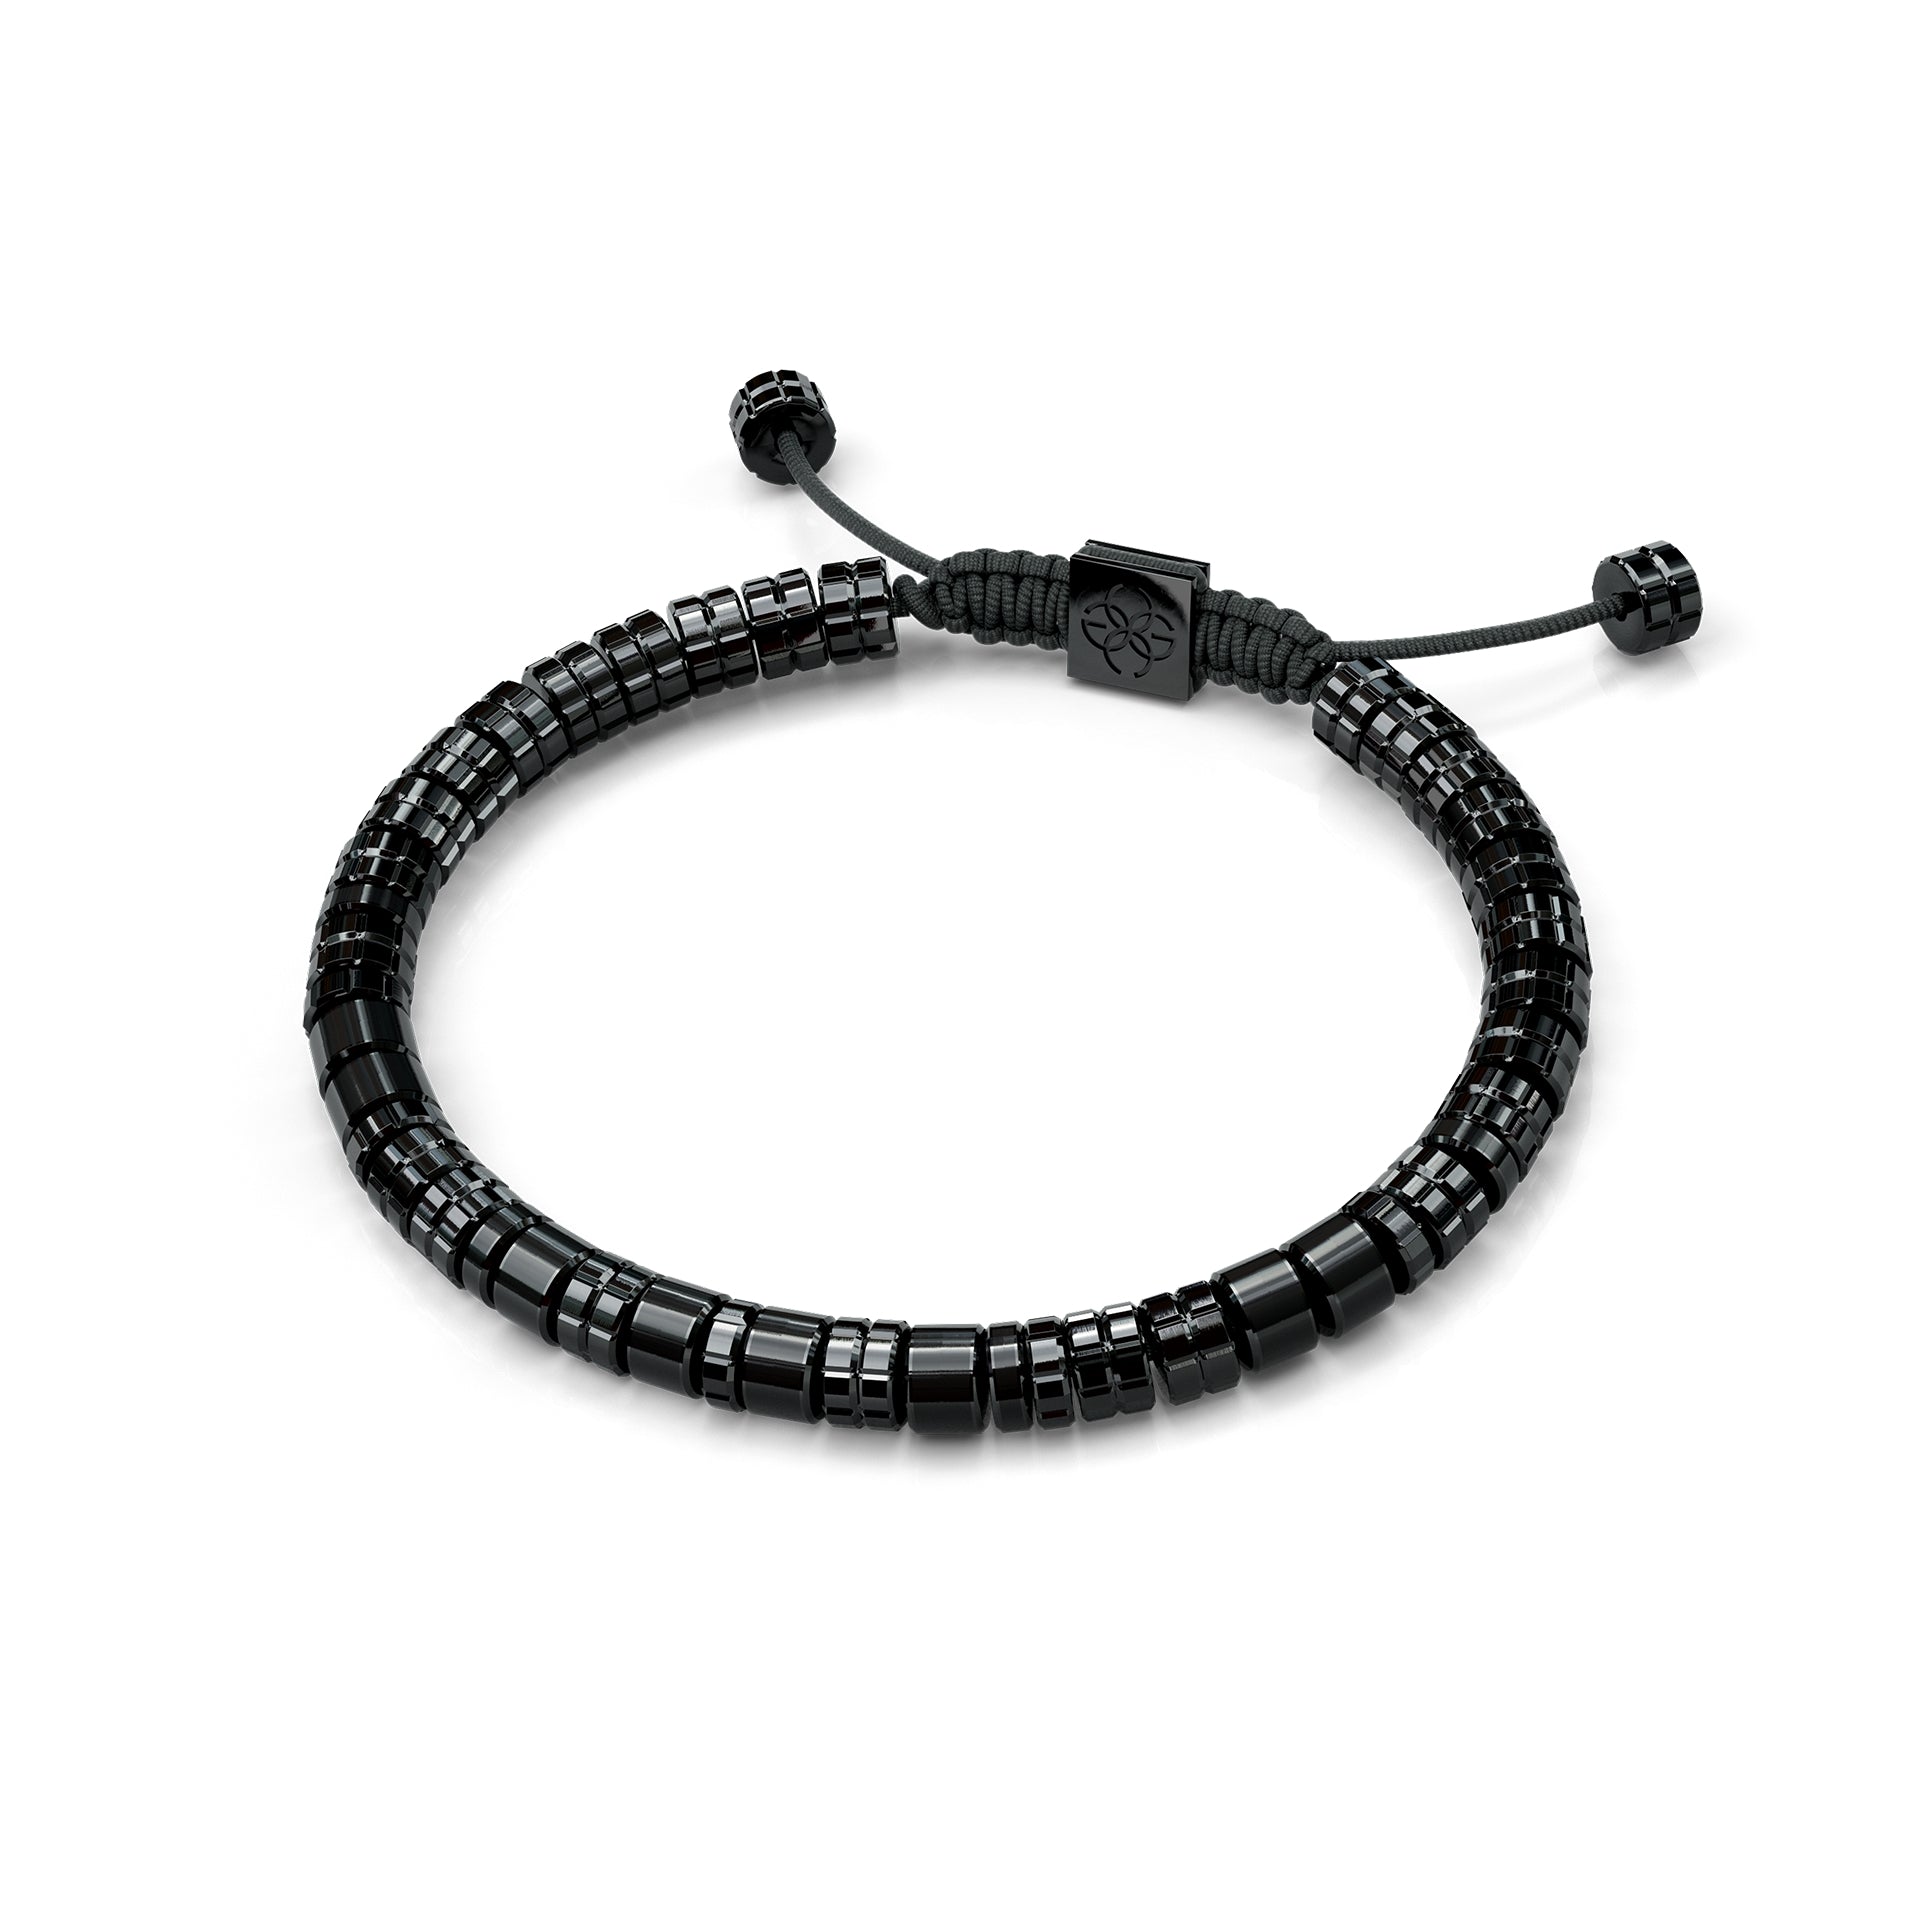 Golden Concept - Bracelets EV - Black - Jet Black